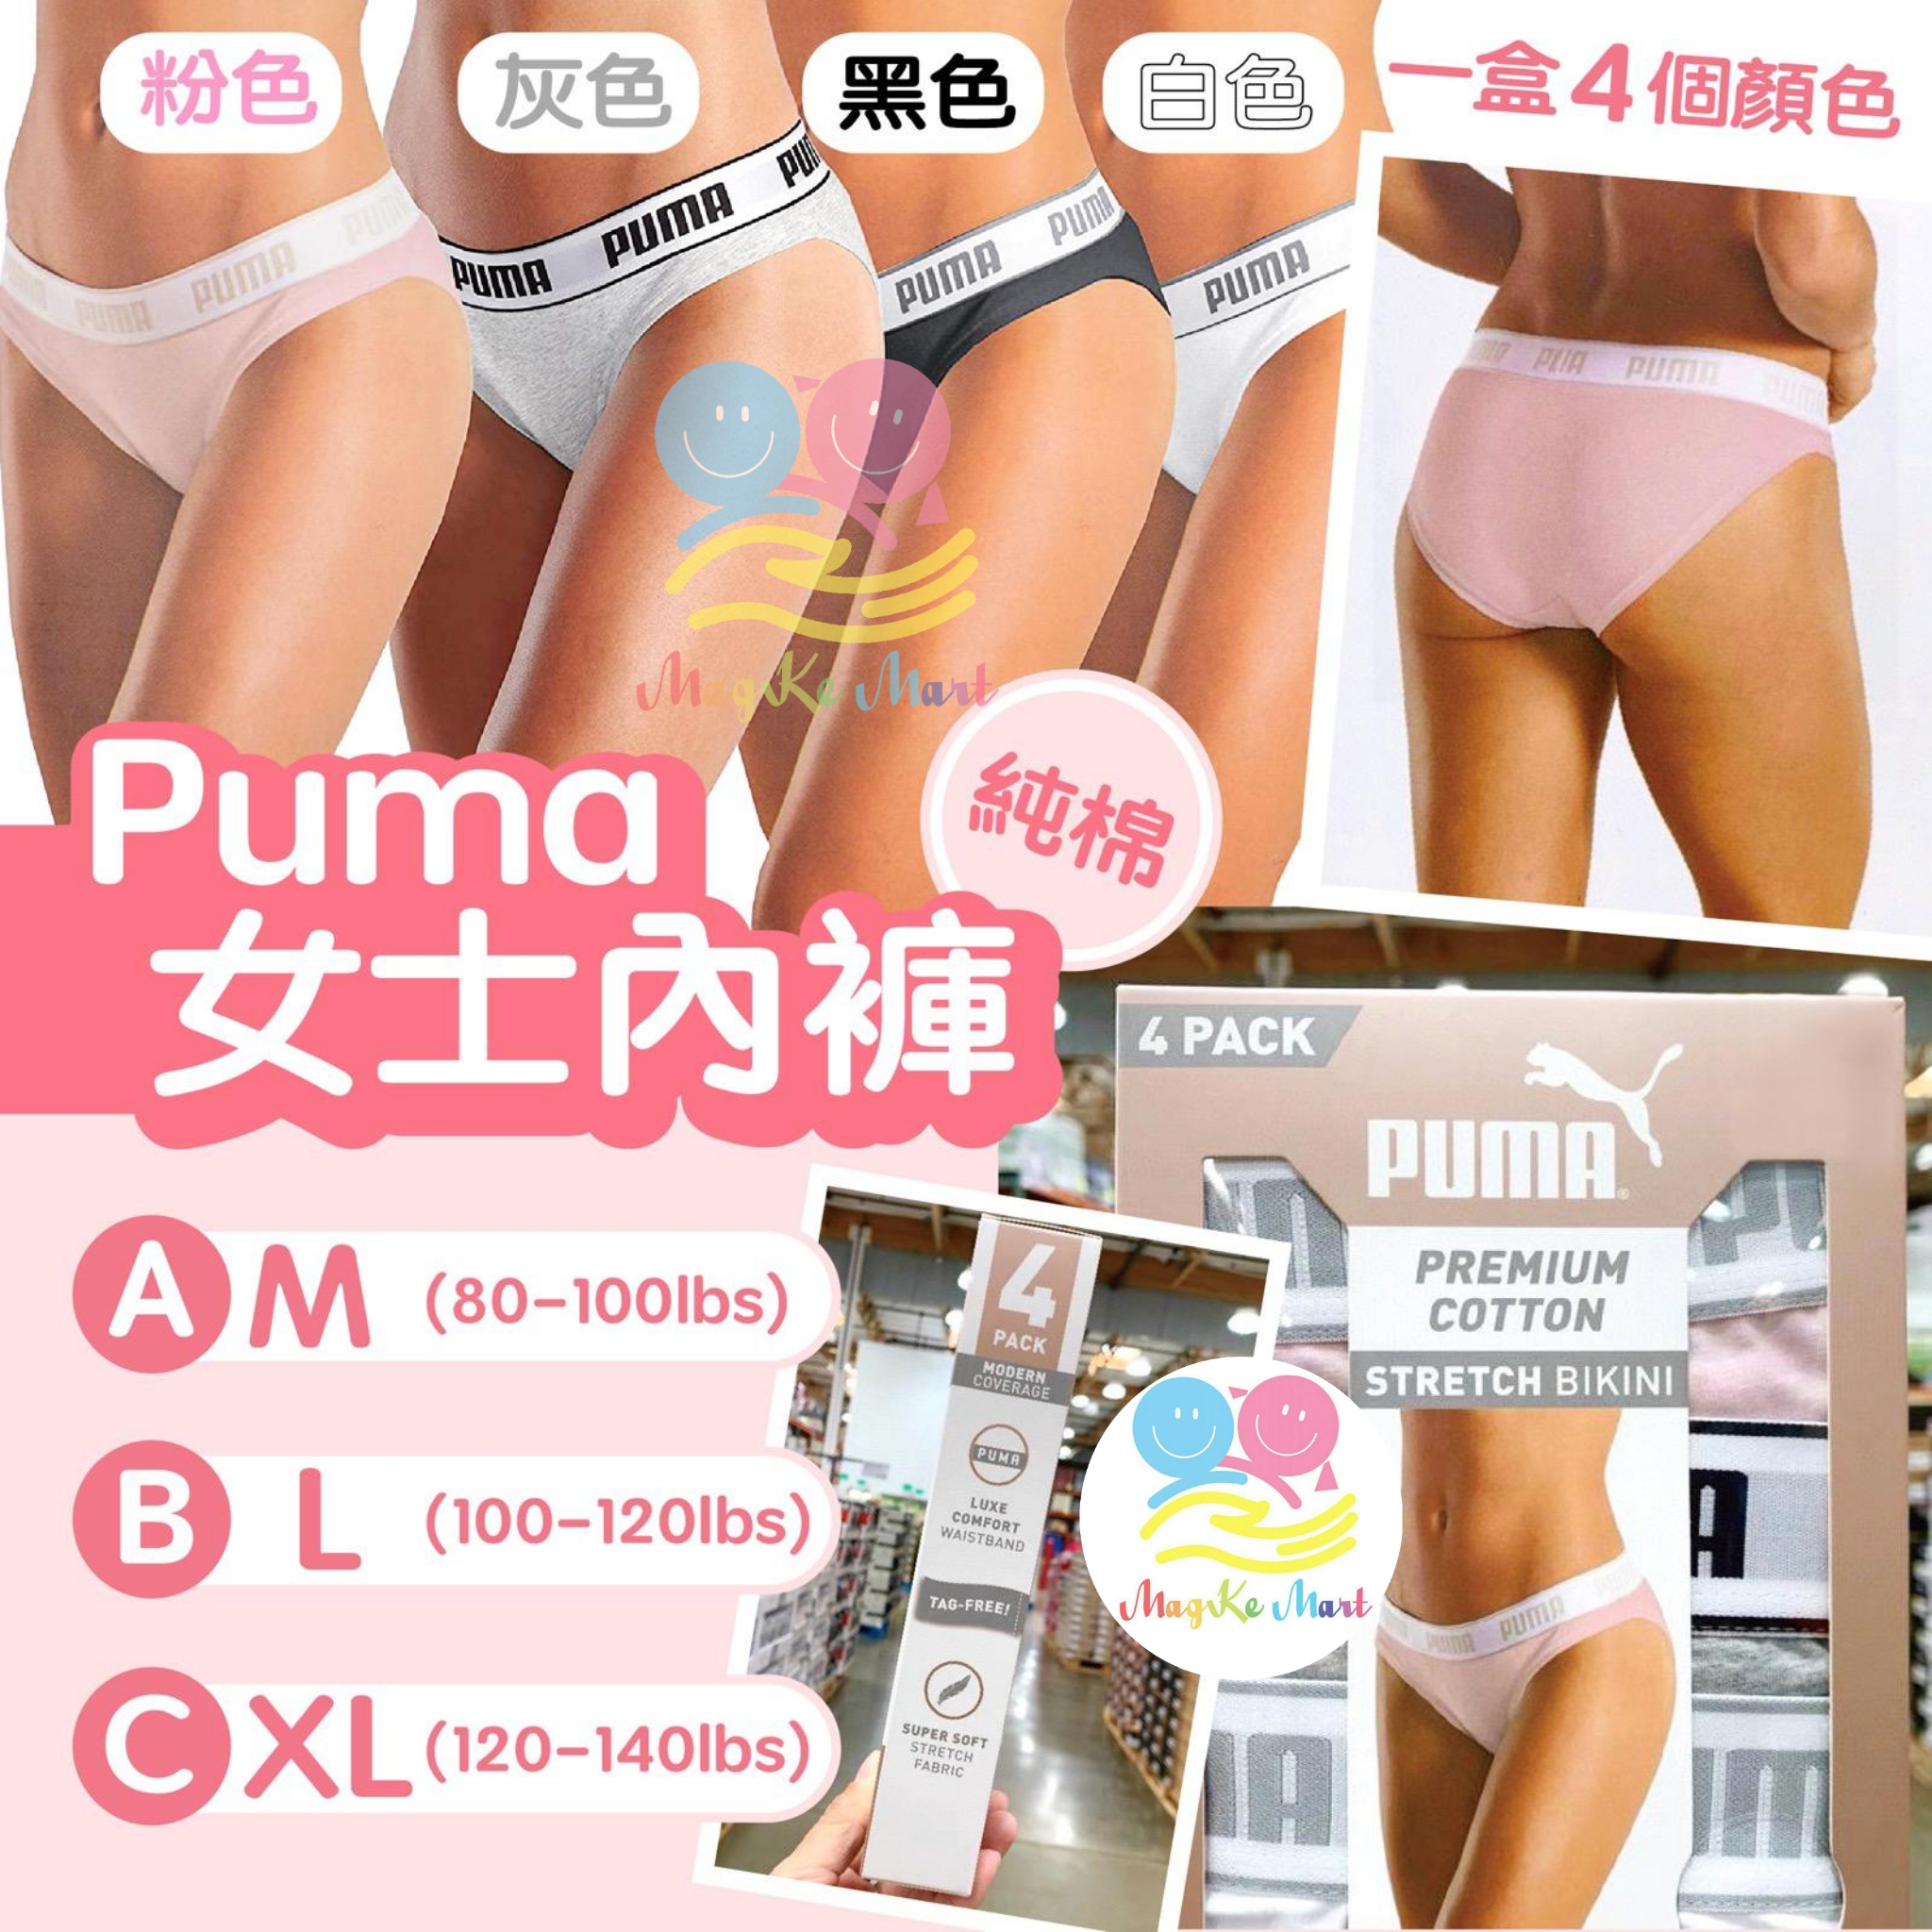 Puma 女士純棉內褲(1盒4條) (C) XL碼